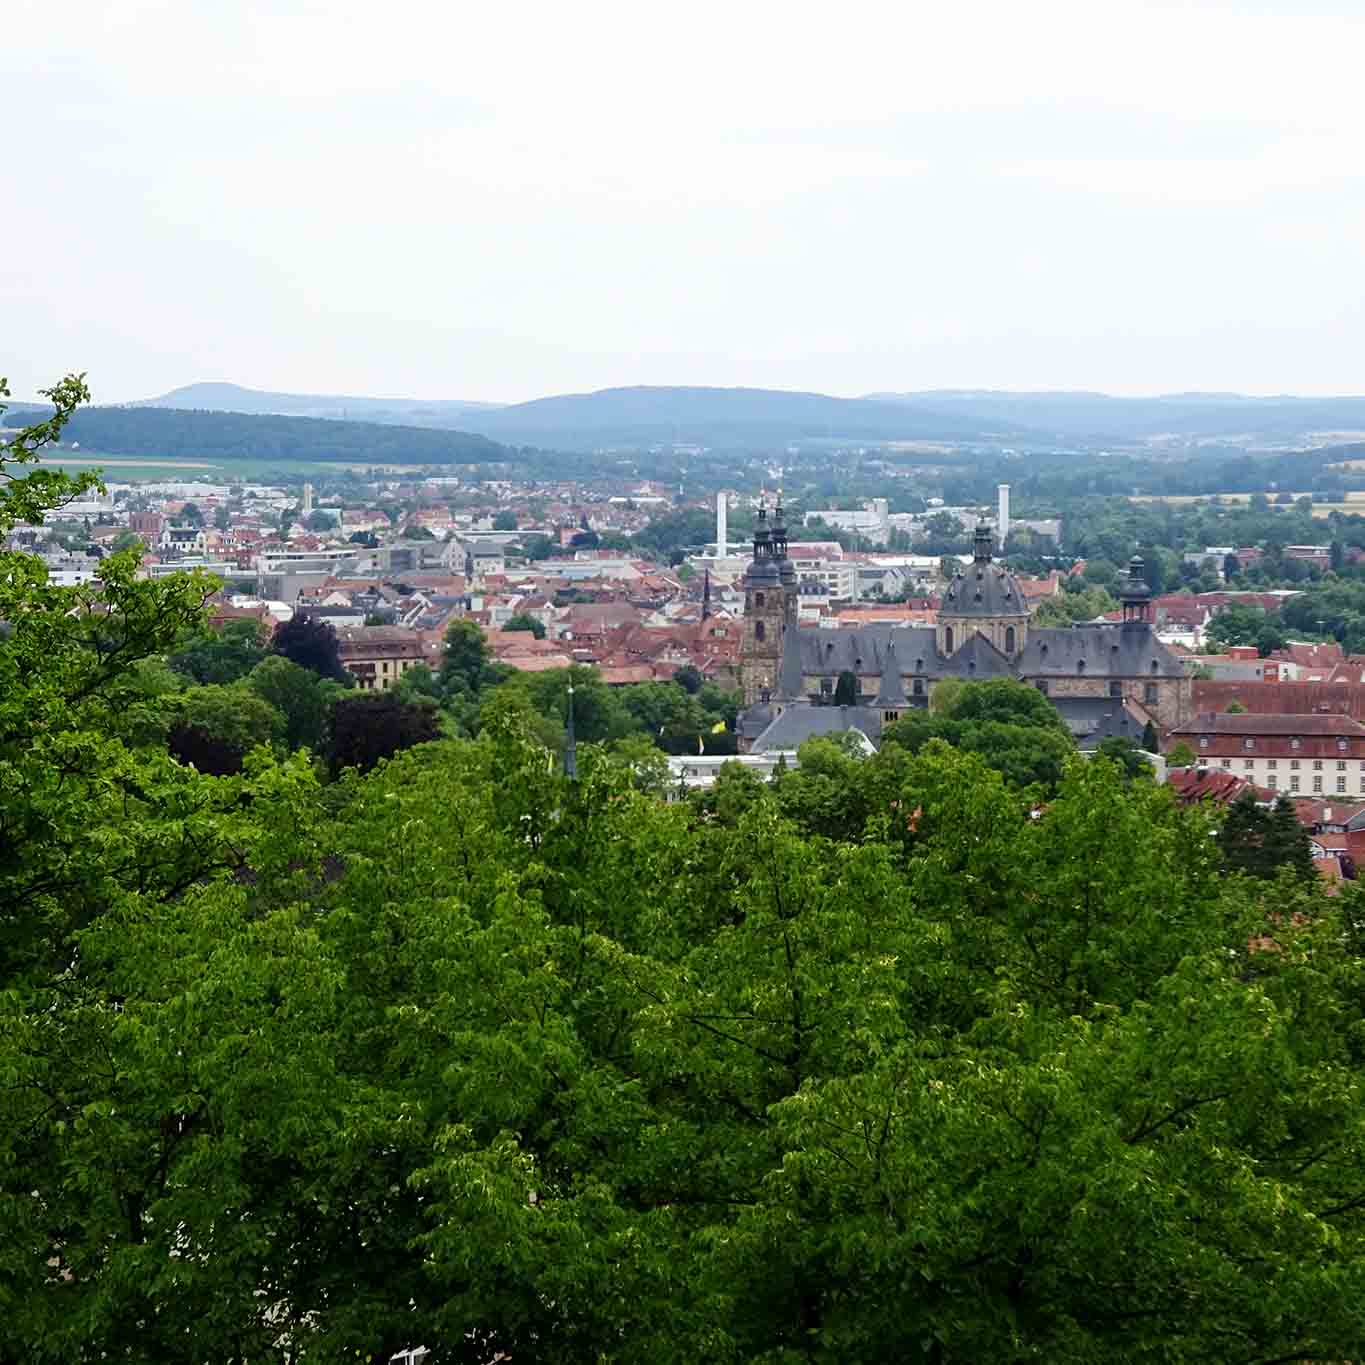 Blick auf die Bischofsstadt Fulda vom Frauenberg.